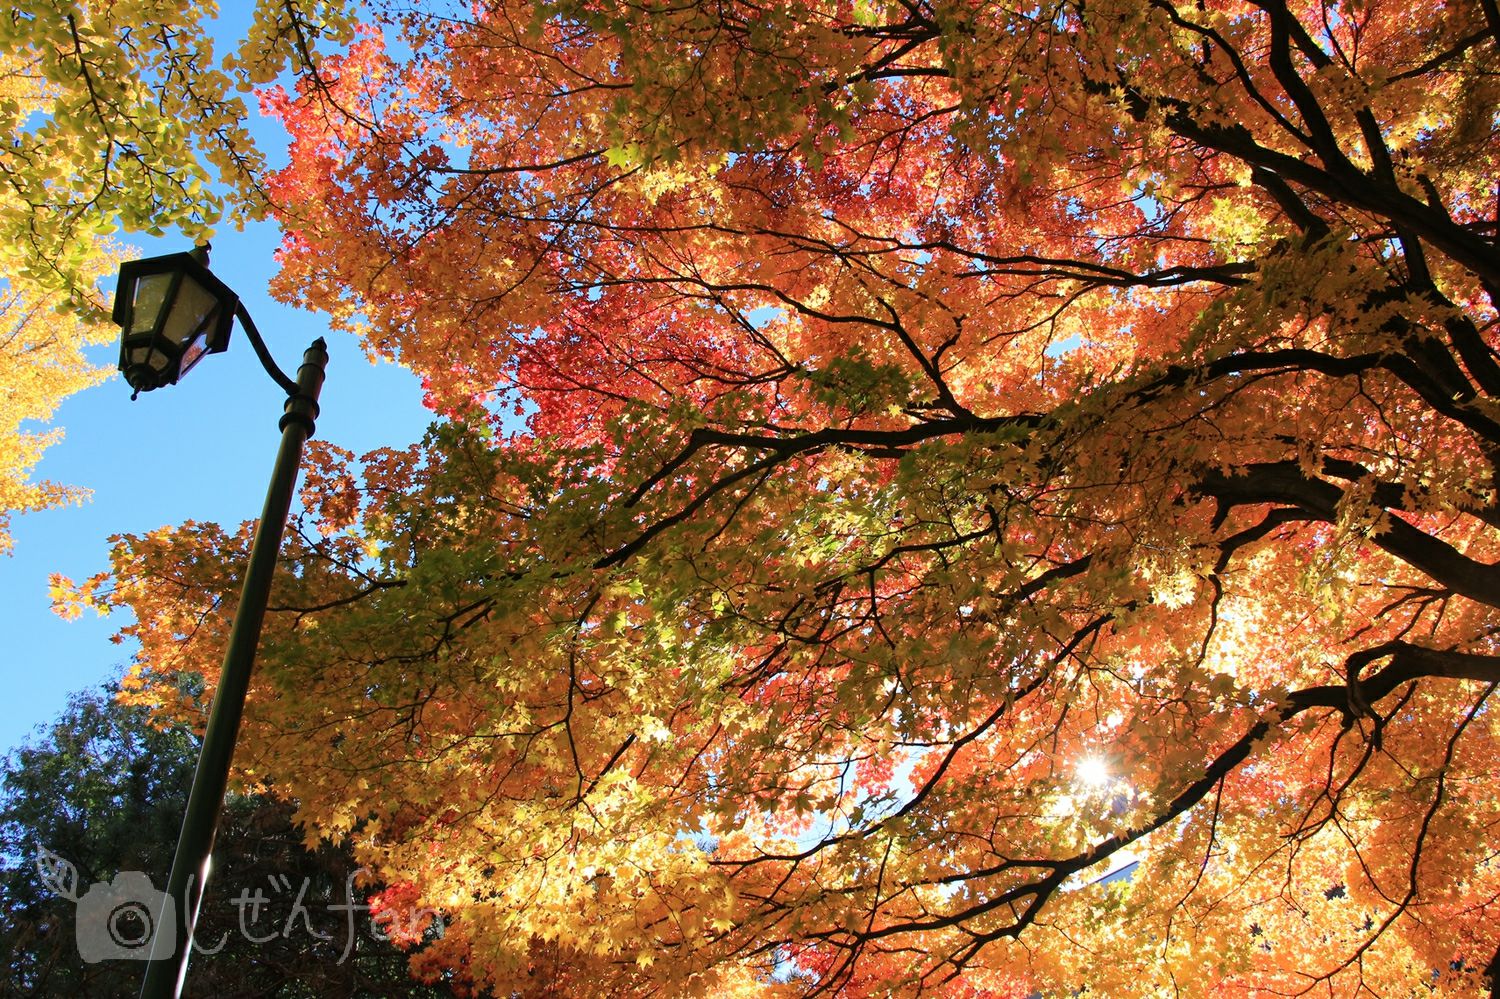 北大構内で光に透ける大きな木の紅葉と街灯